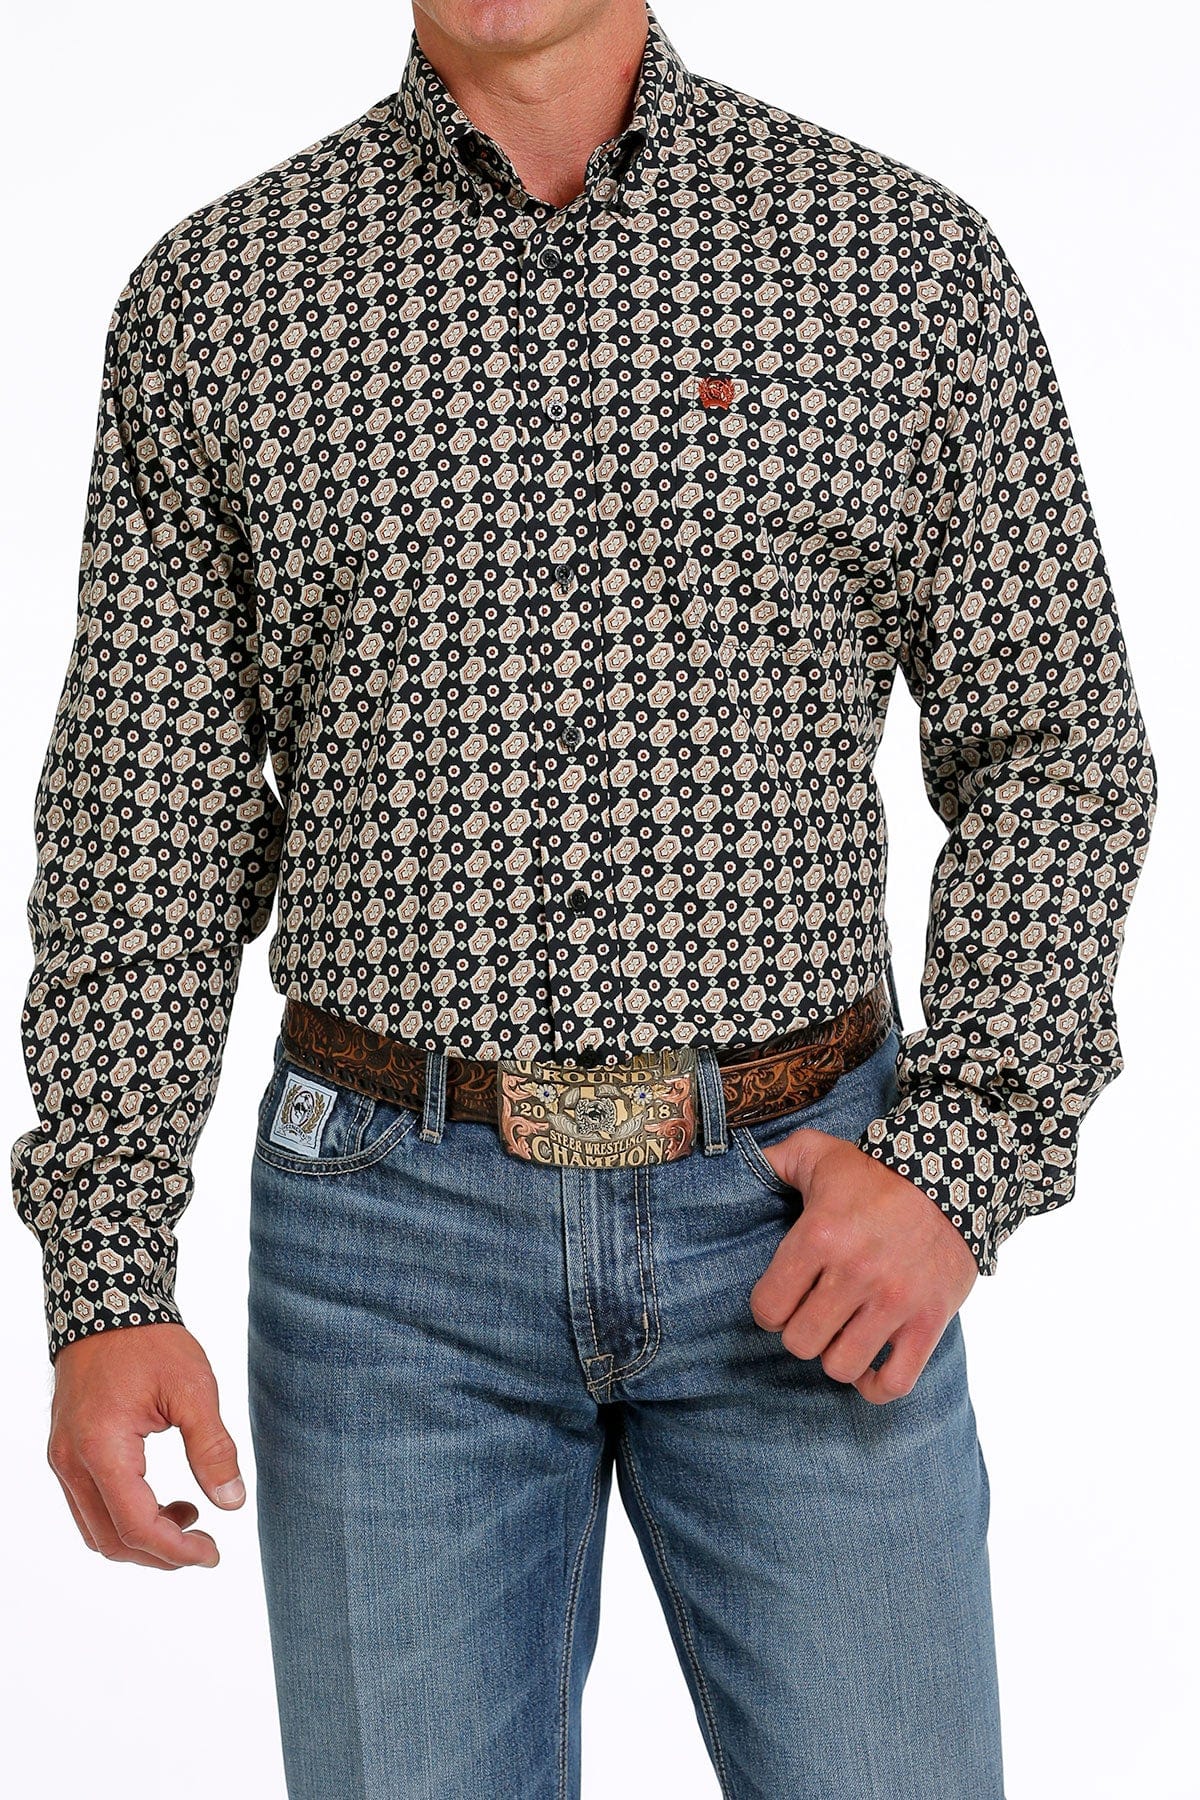 Cinch Boys Geometric Print Western Shirt XL